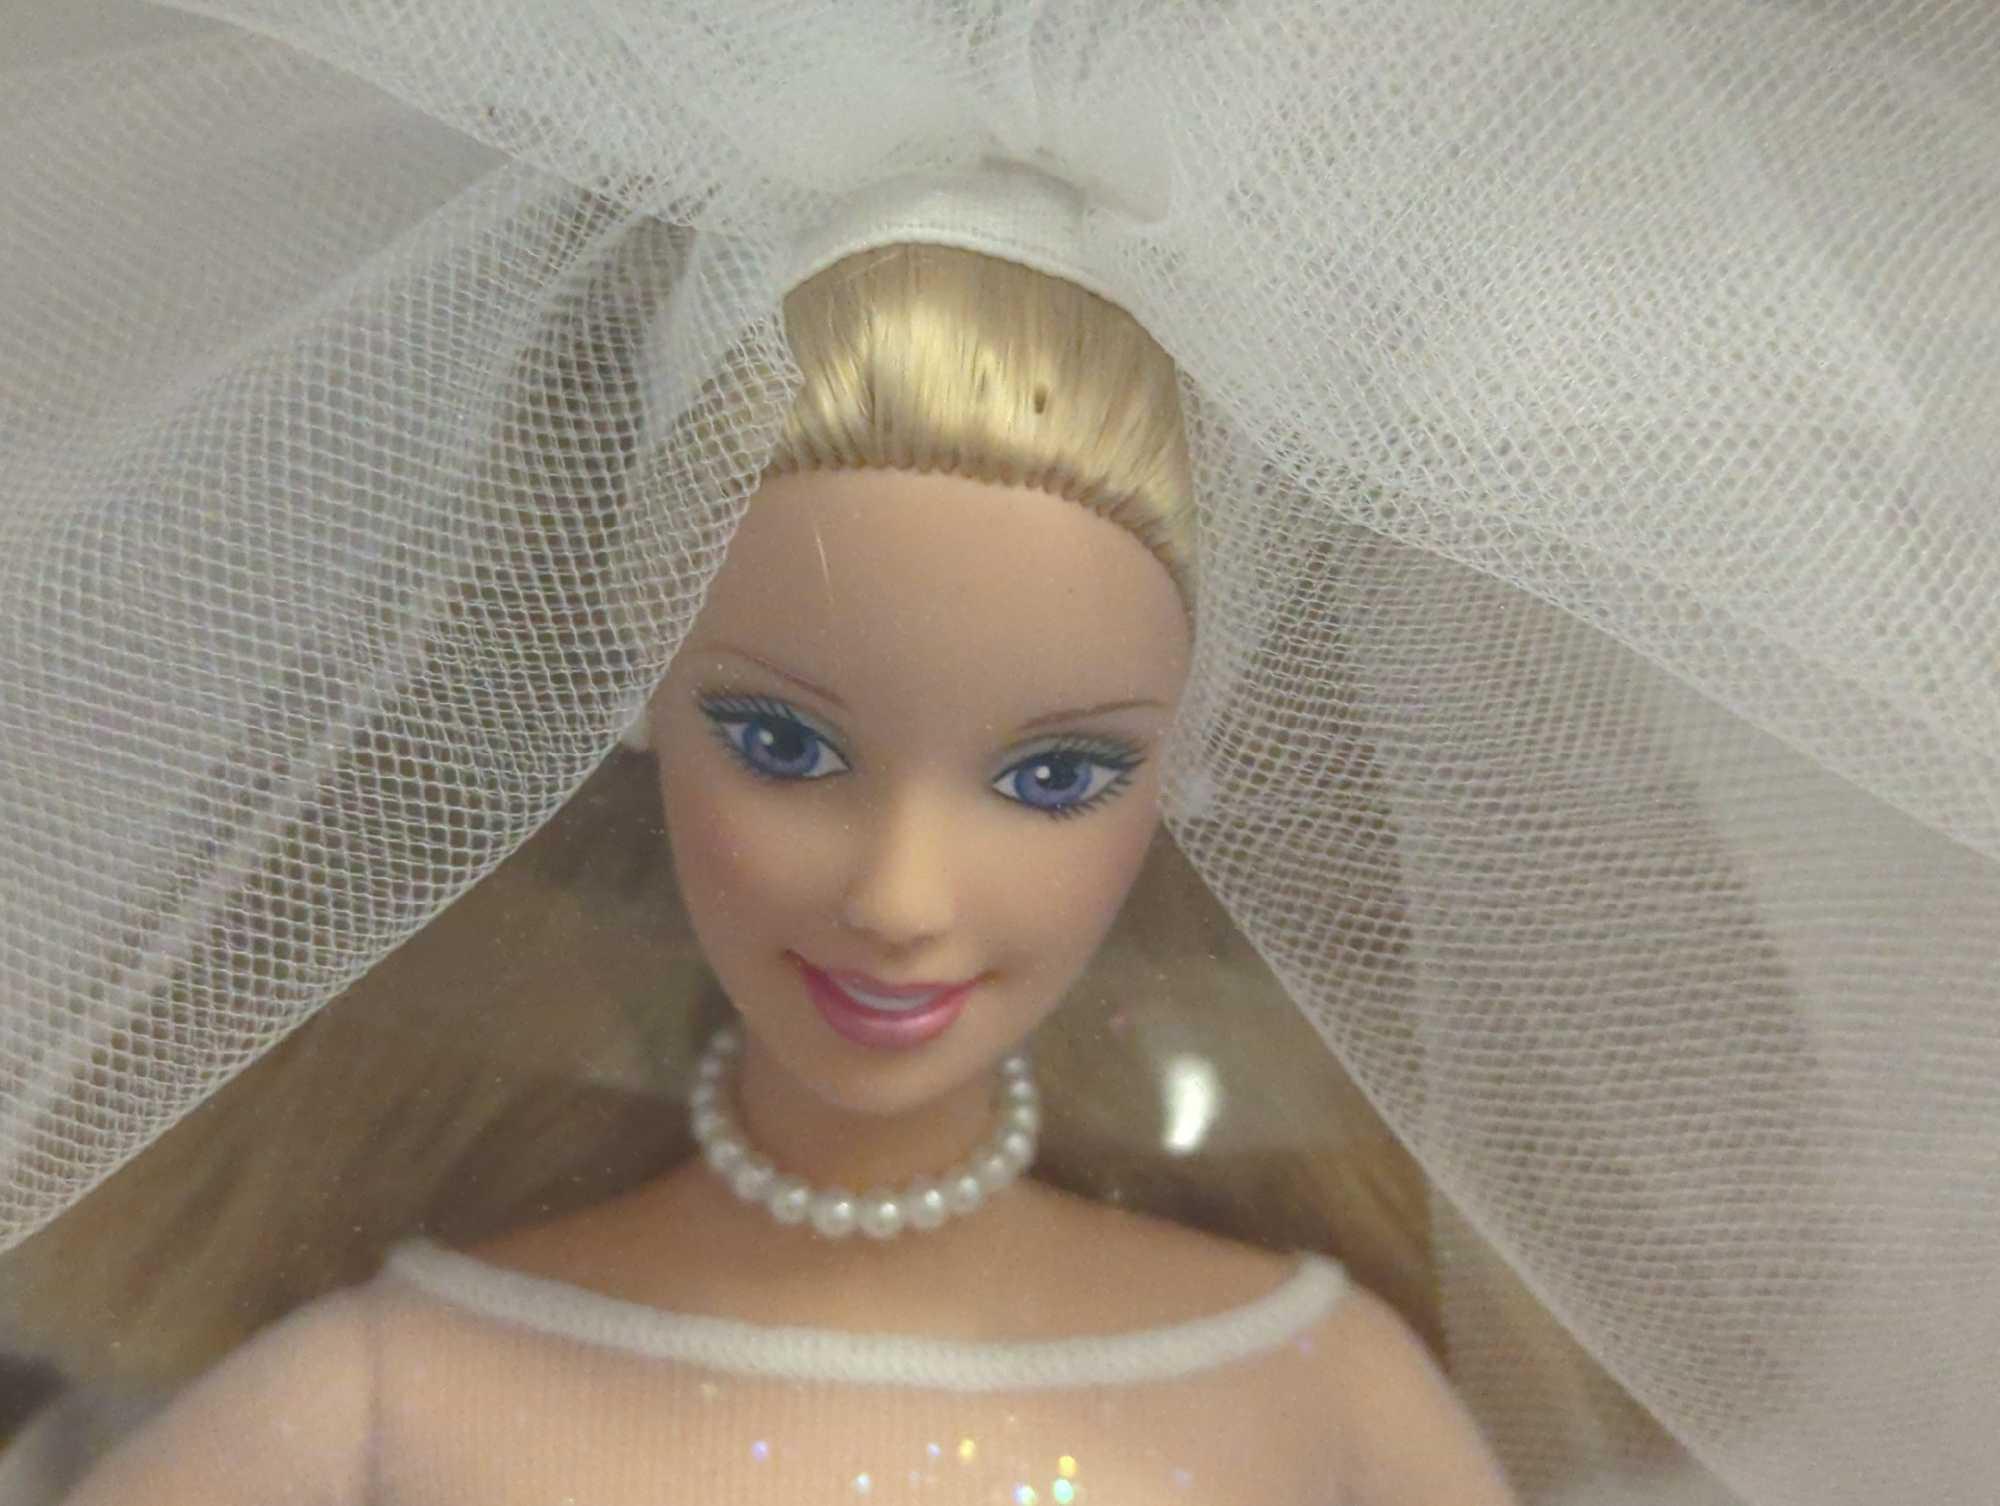 1999 Mattel Blushing Bride Barbie, New in Box, Retail Price $50, Box Measures - 14" x 8" x 2.5",